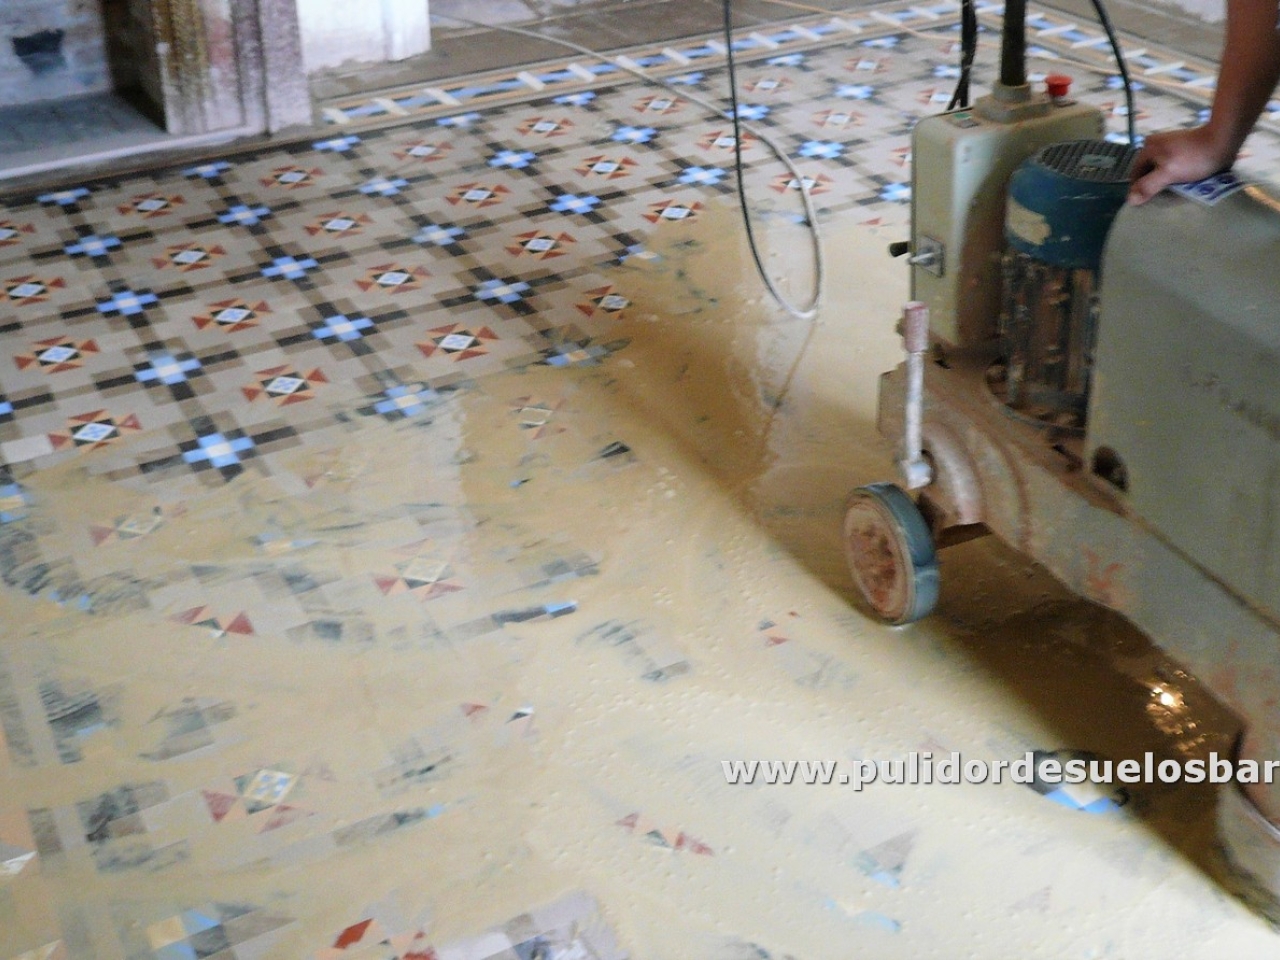  Pulidor de suelos de mosaico nolla Barcelona
